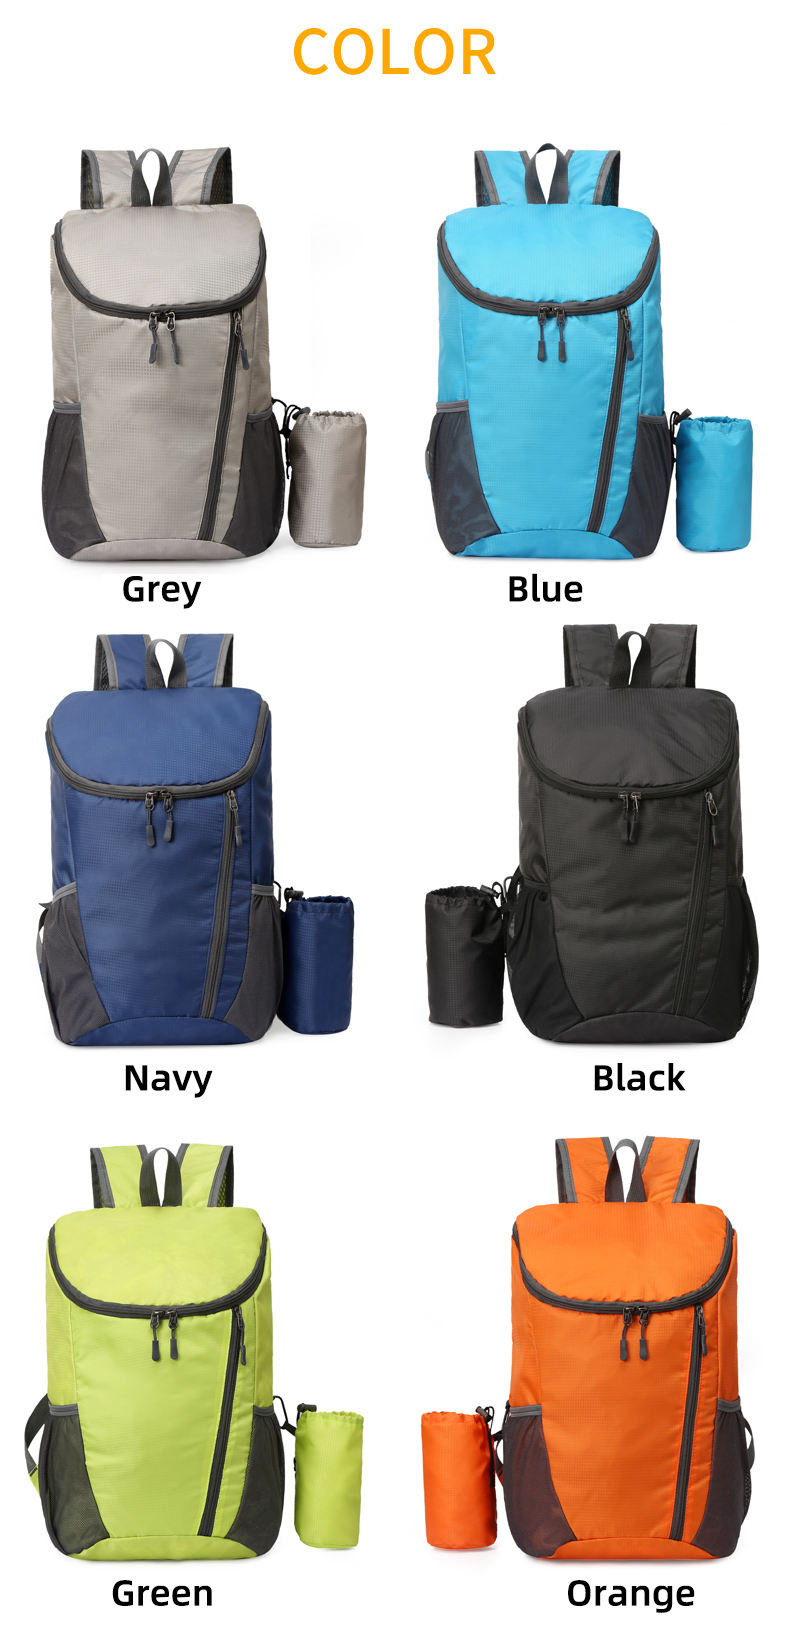 Sac à dos pliant étanche Portable extérieur personnalisé pliable East Sport sac à dos Damen sac à dos hommes et femmes sac à dos de sport